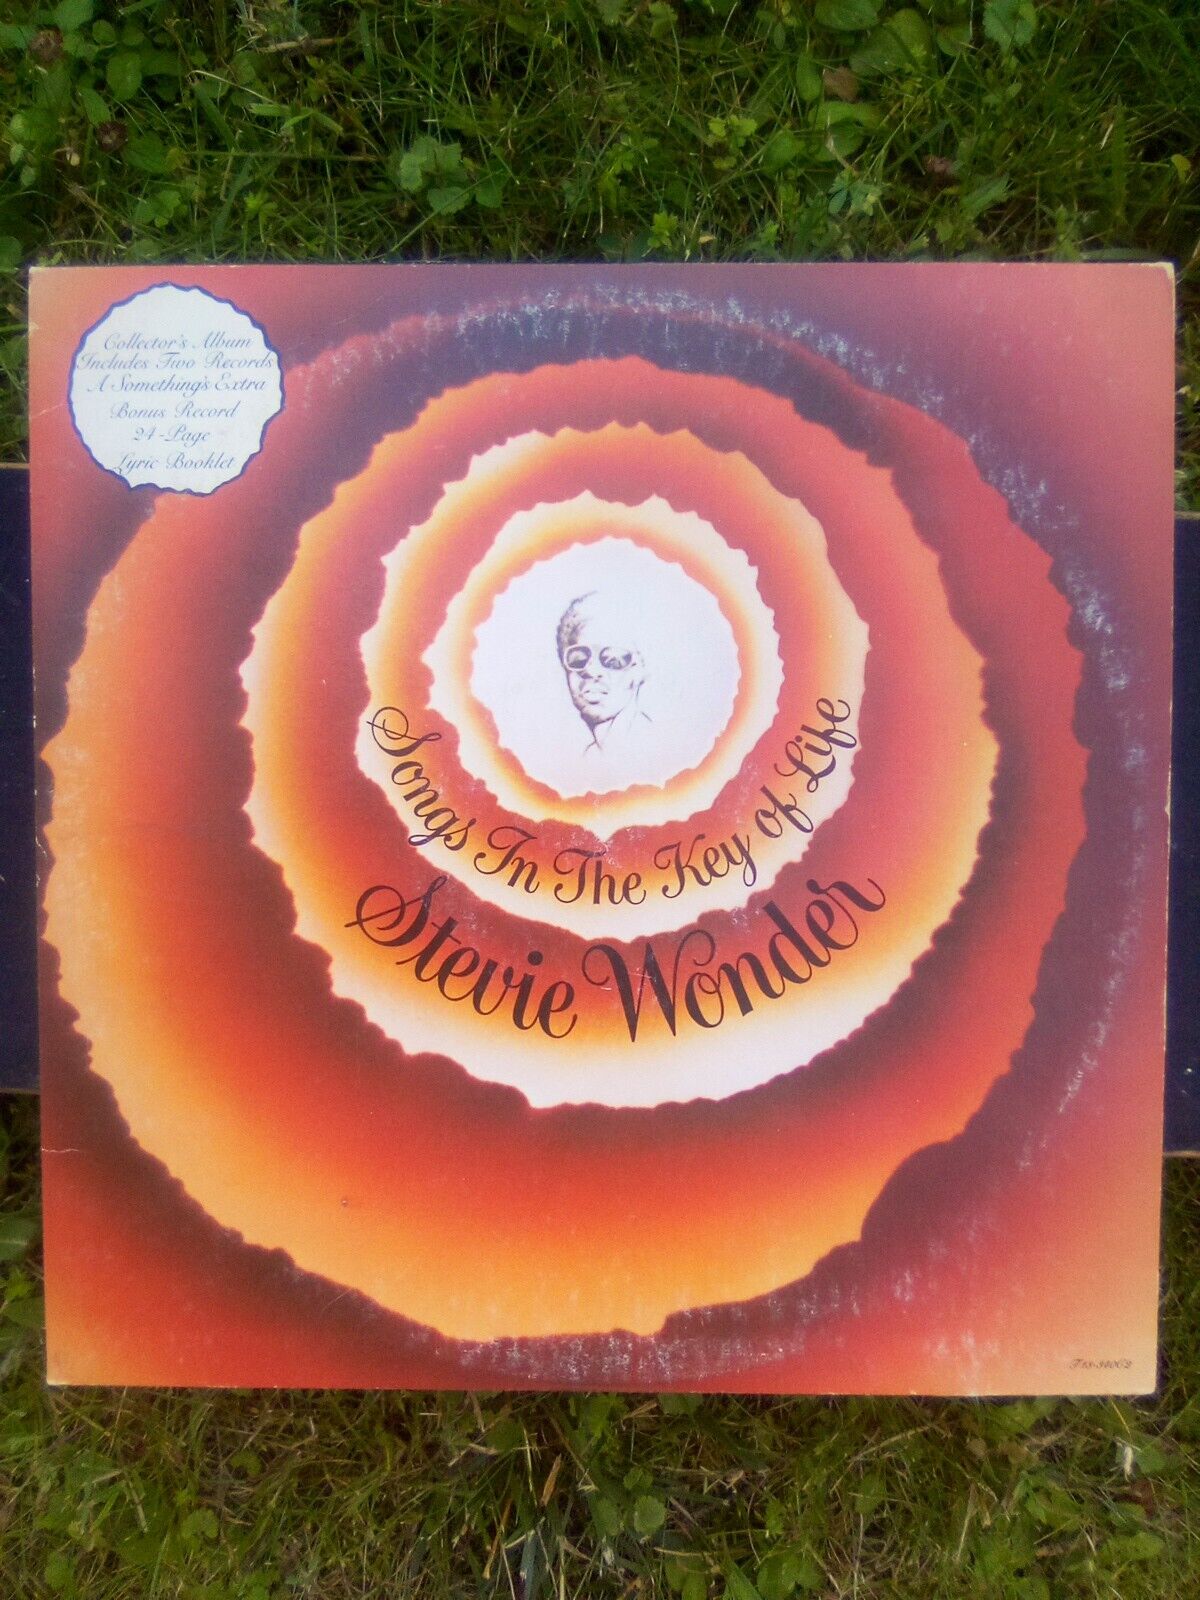 Stevie Wonder Songs In The Key Of Life T13-00340 Double LP EXC/NM Tamla 